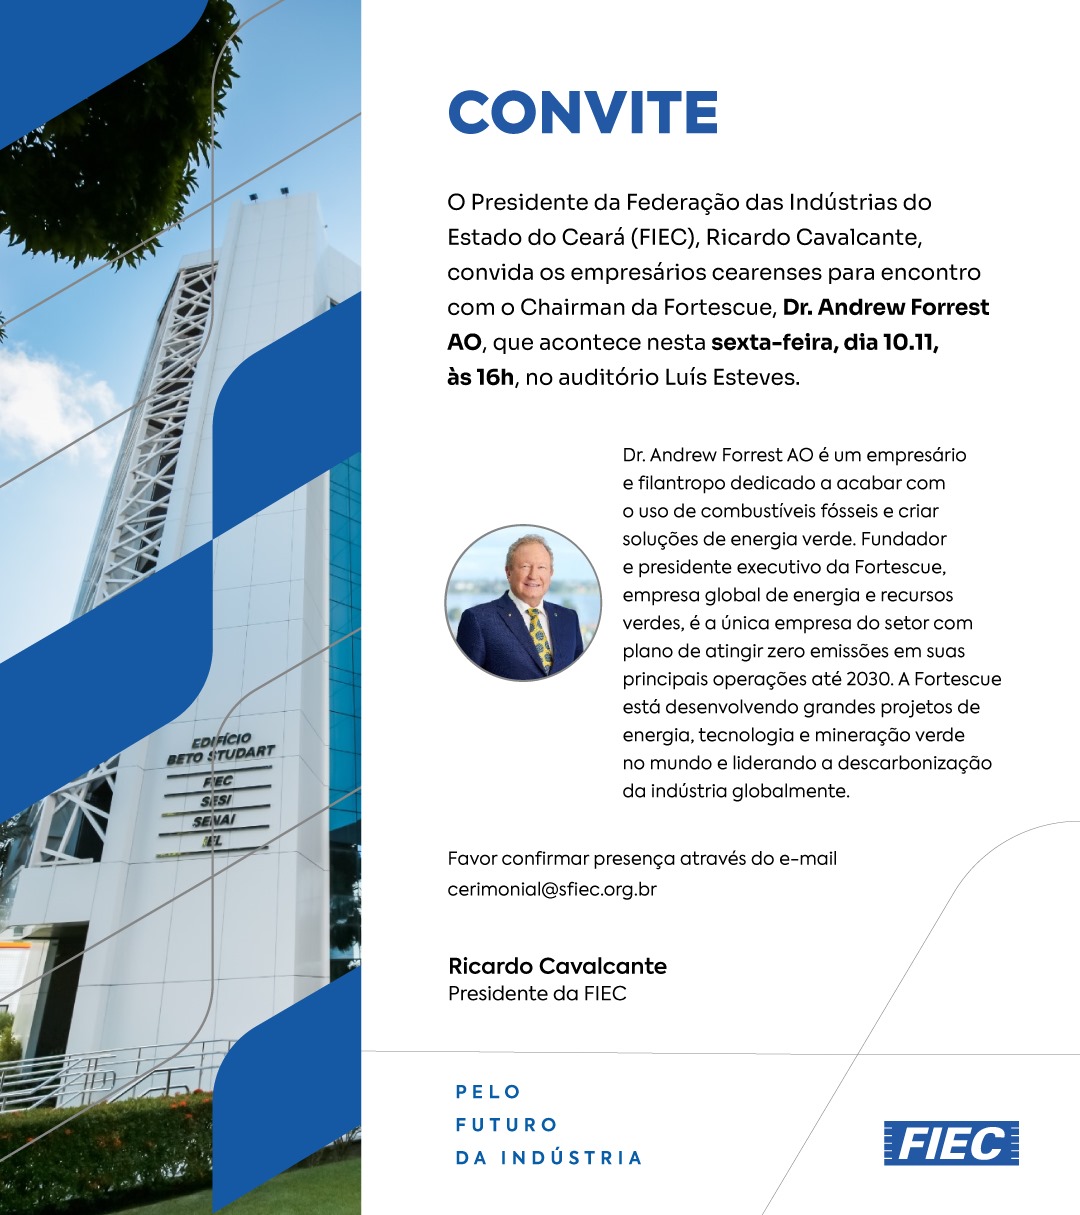 Presidente da Fiec, Ricardo Cavalcante, vai se reunir com o chairman e fundador da Fortescue